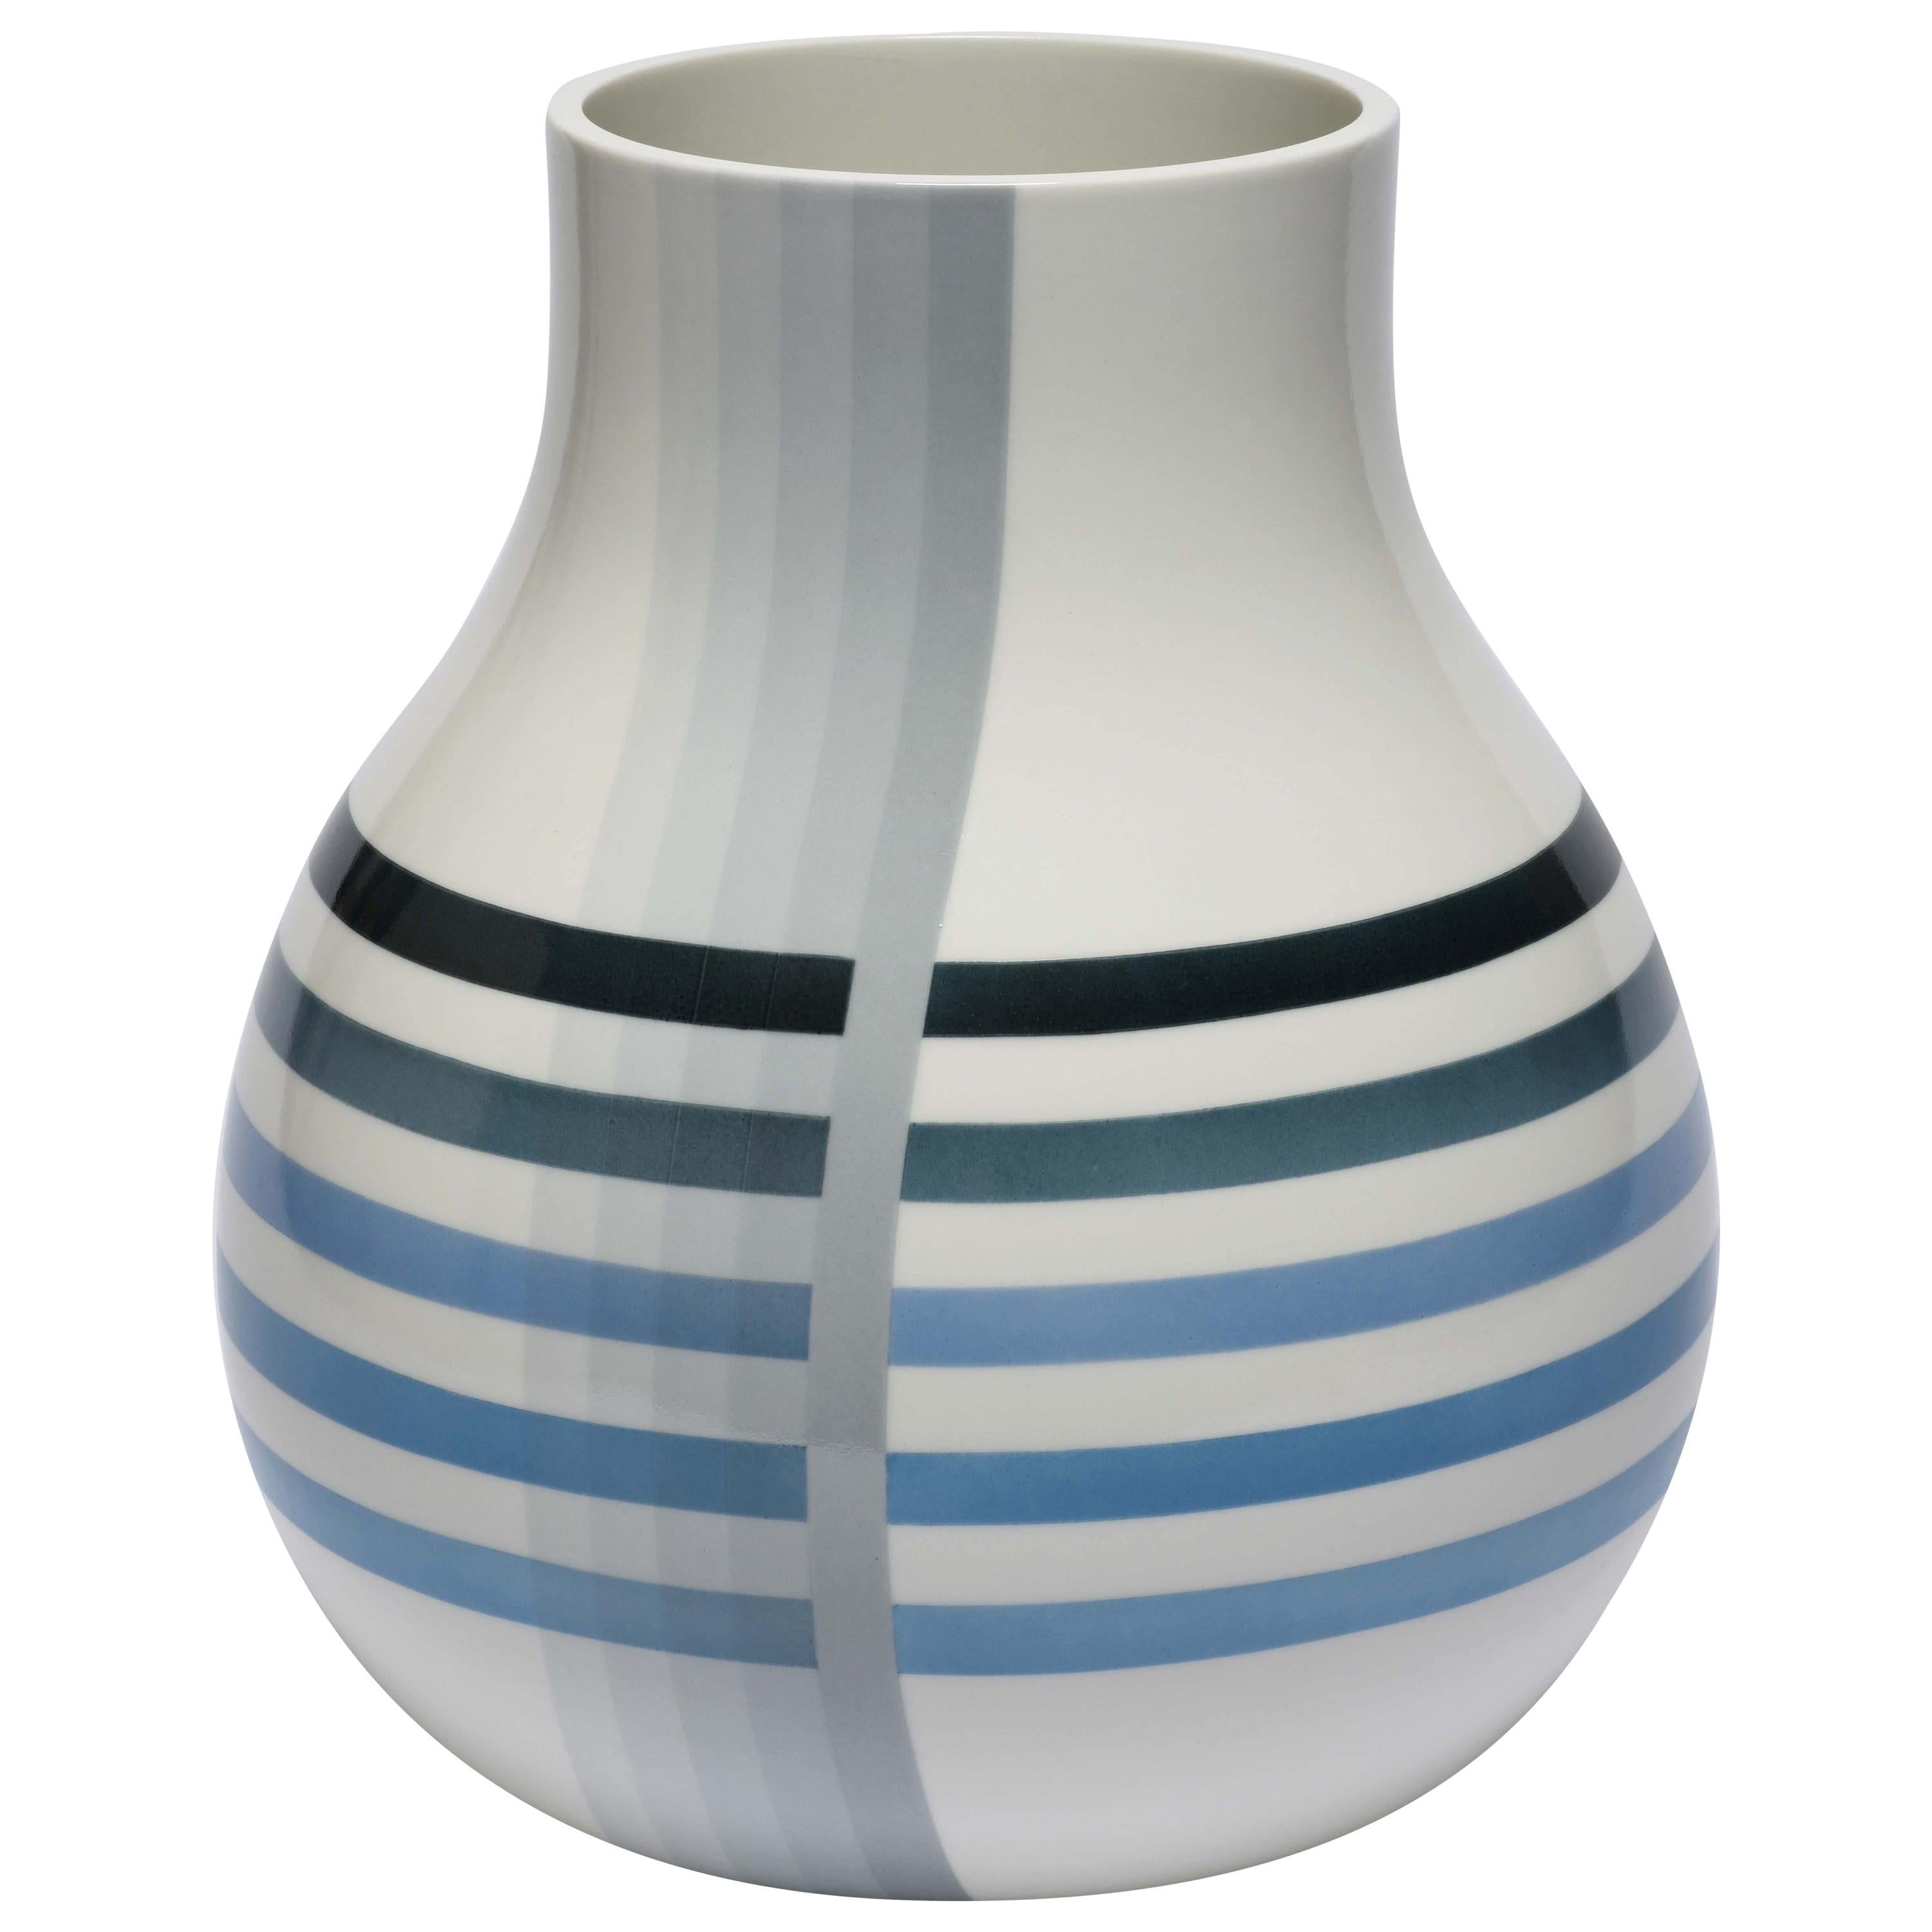 Scholten & Baijings 3 Vase in Porcelain by Manufacture Nationale de Sèvres For Sale